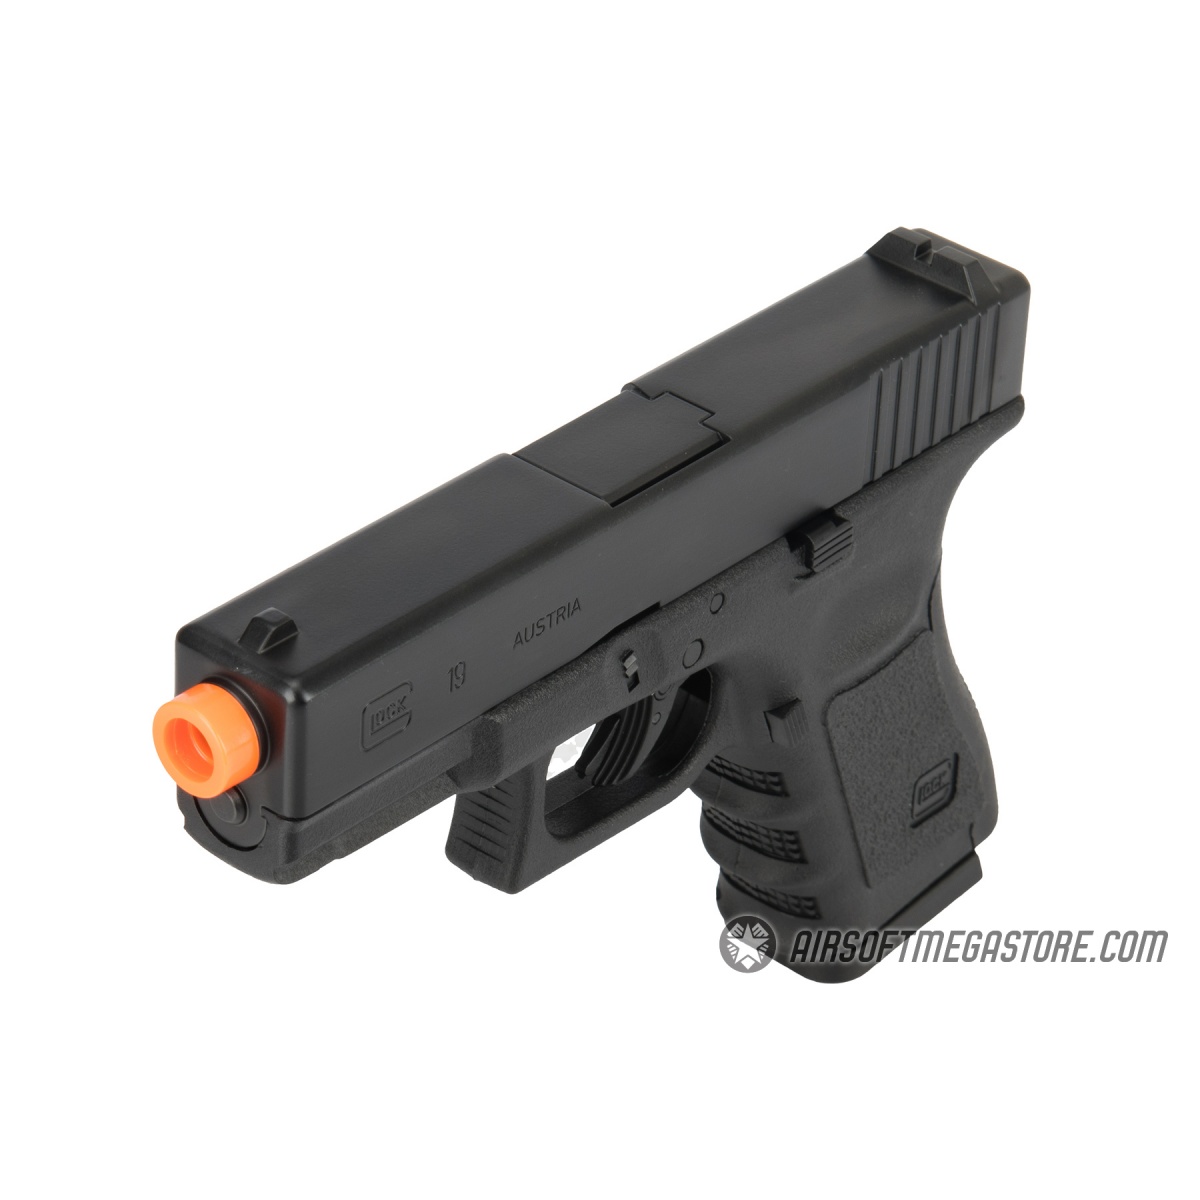 Umarex Glock 19 Gen3 6mm BB Airsoft Pistol, Black (2275200